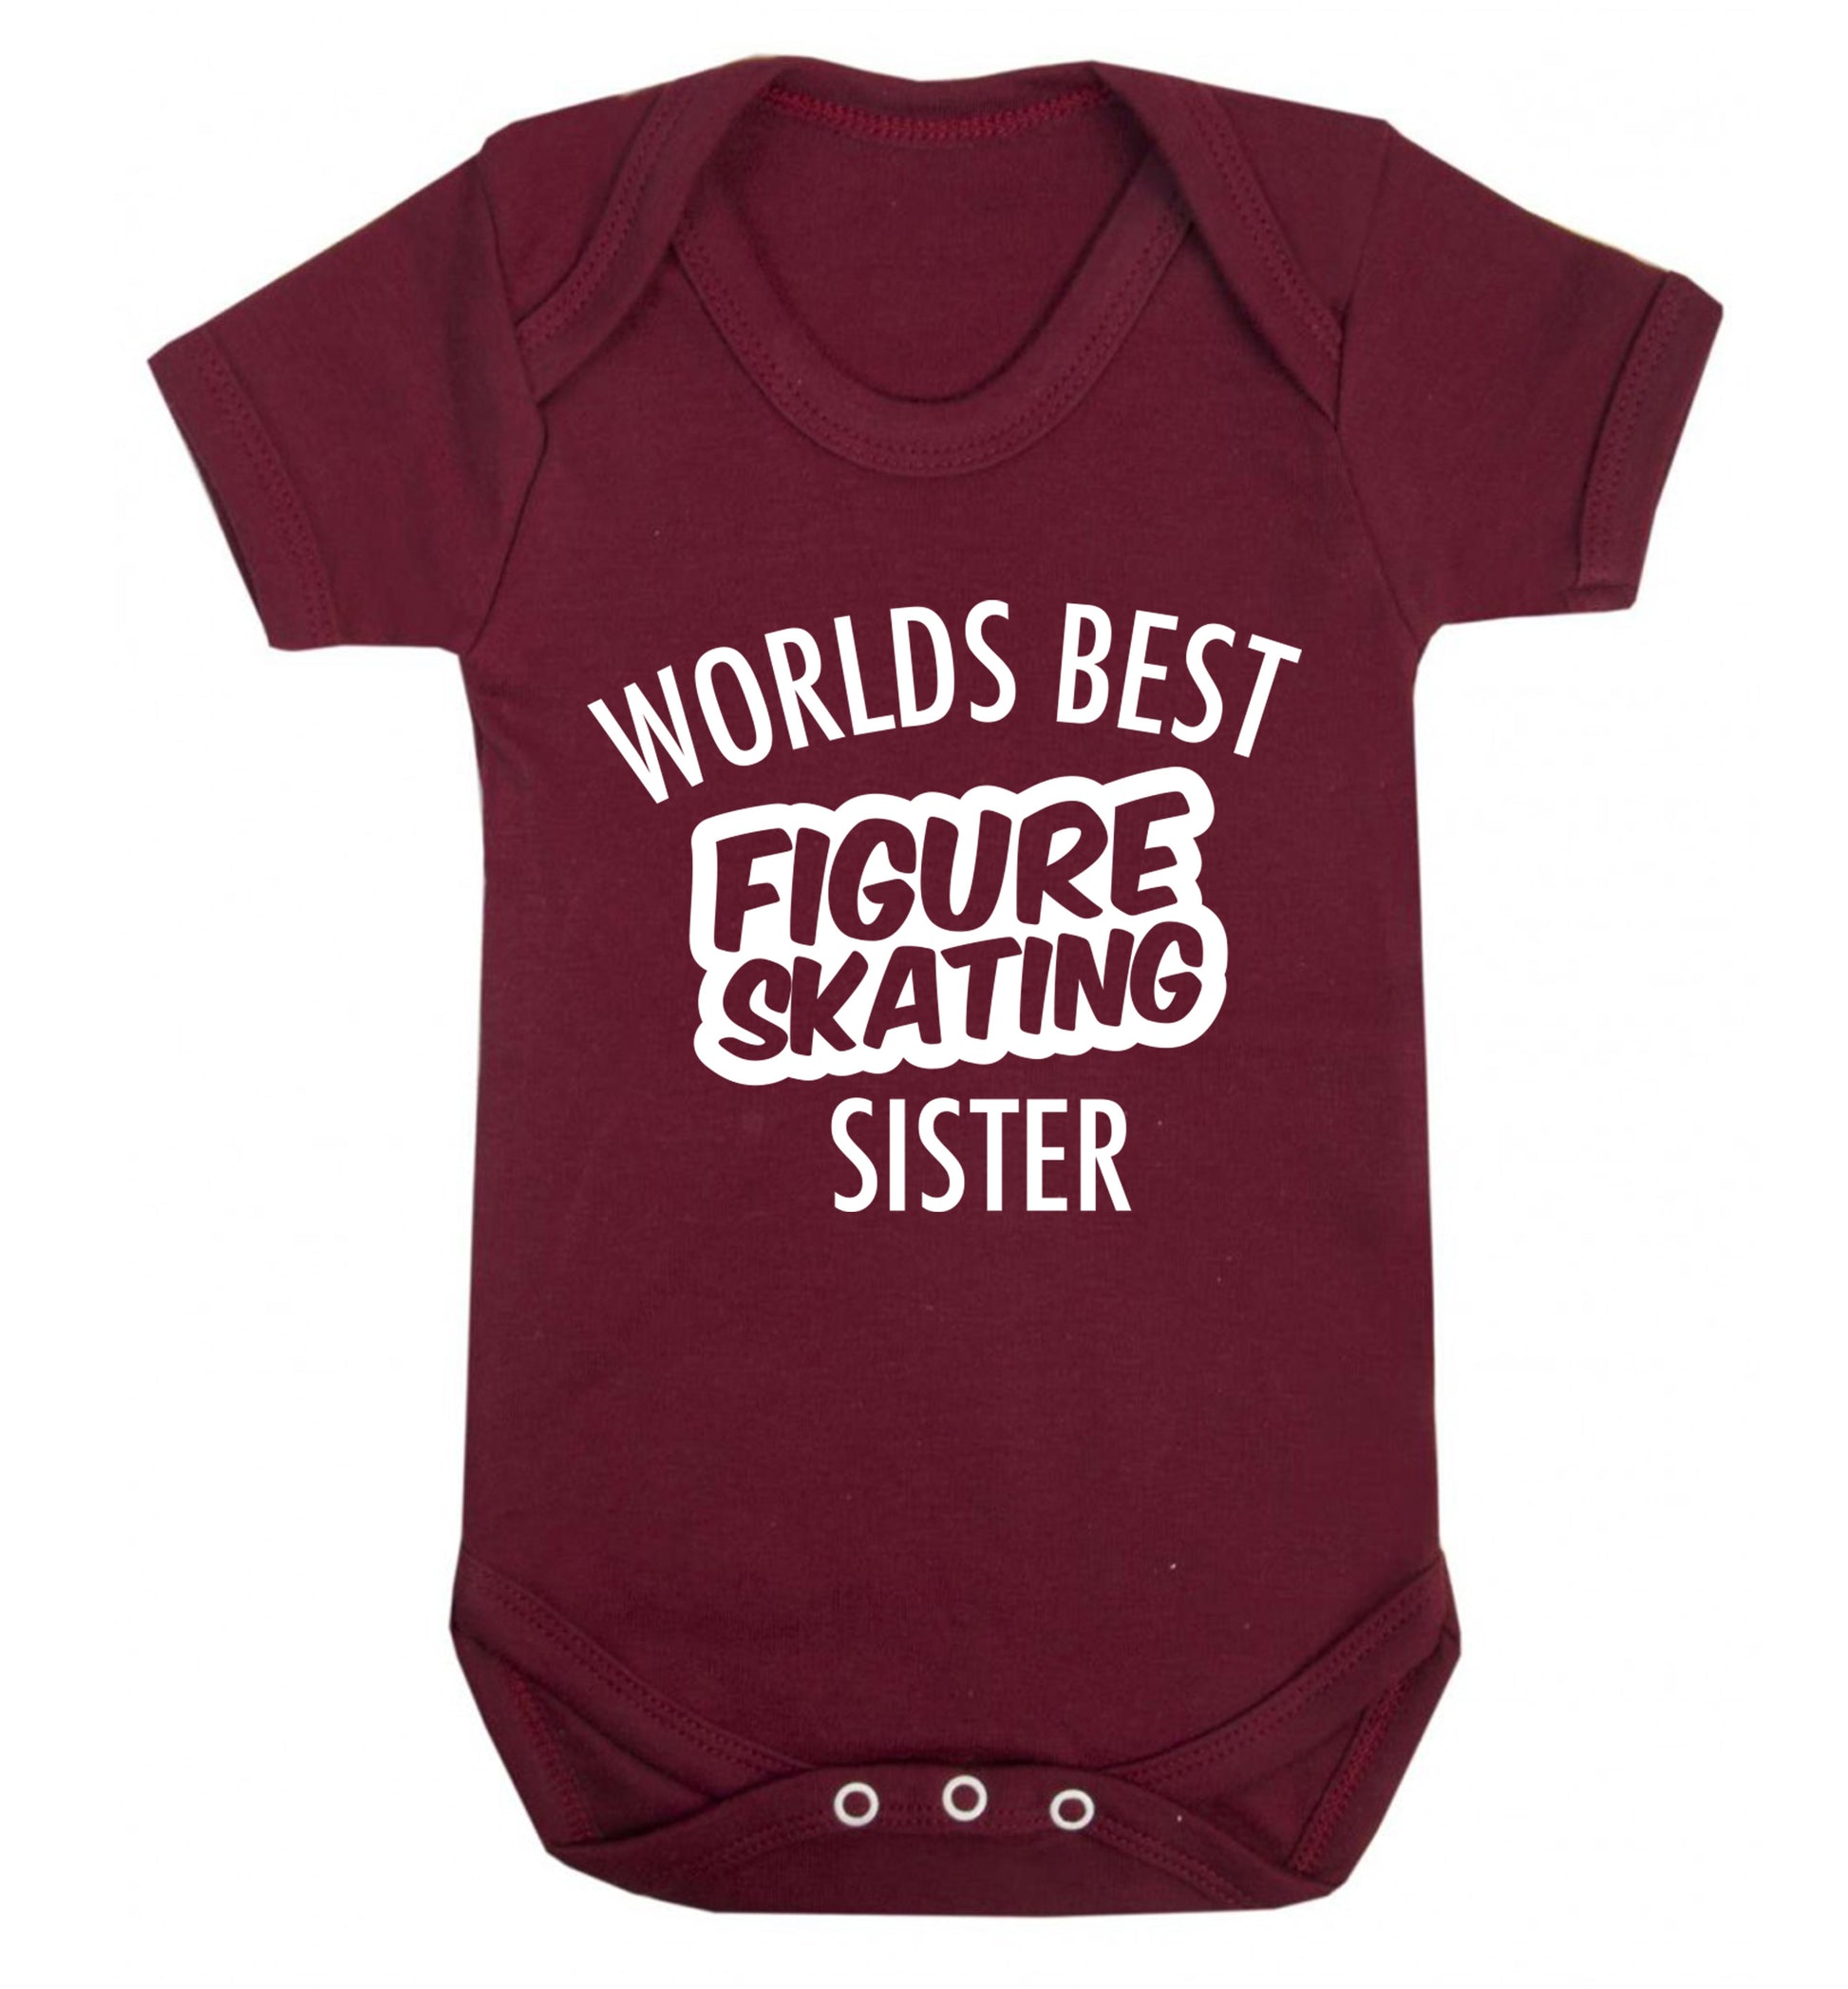 Worlds best figure skating sisterBaby Vest maroon 18-24 months